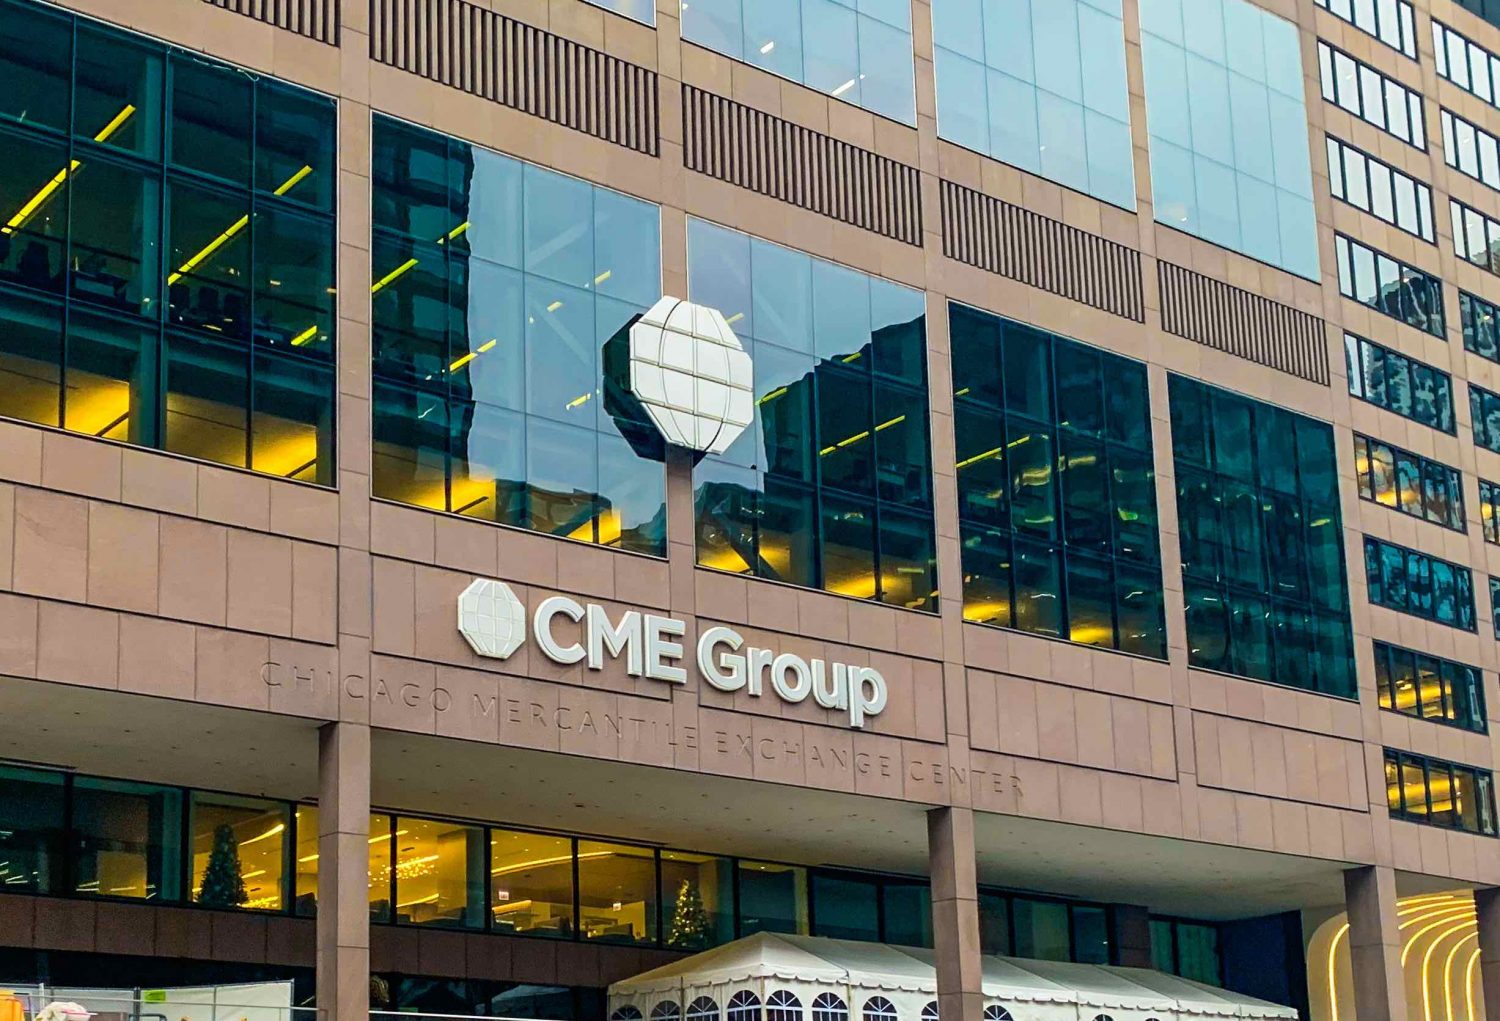 سي ام اي جروب CME Group تعلن عن زيادة بنسبة 11% في معدل النمو السنوي لشهر أكتوبر